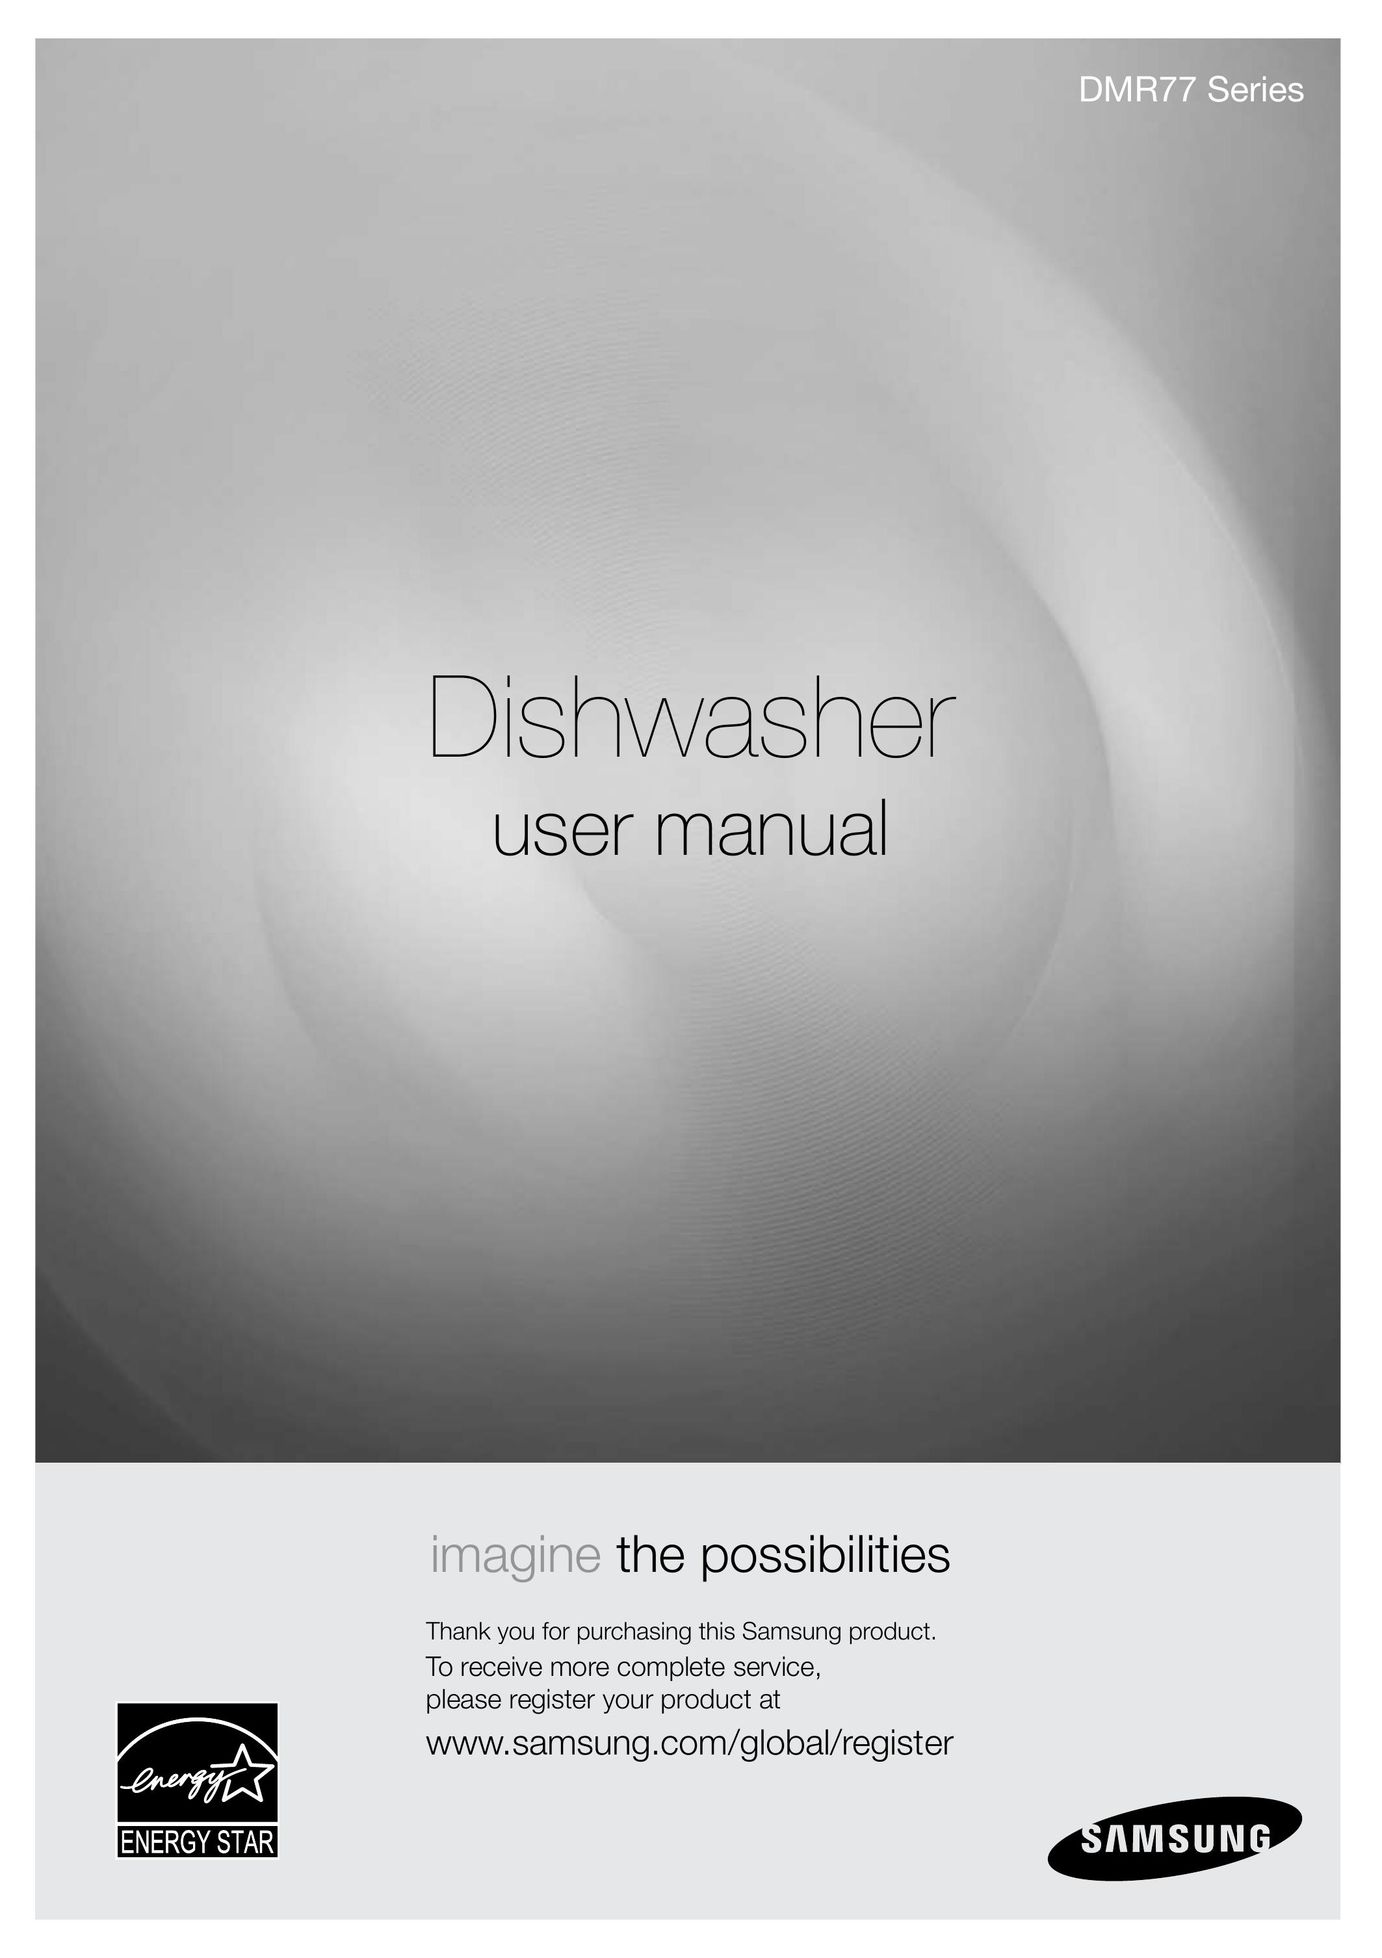 Samsung DMR77LHS Dishwasher User Manual